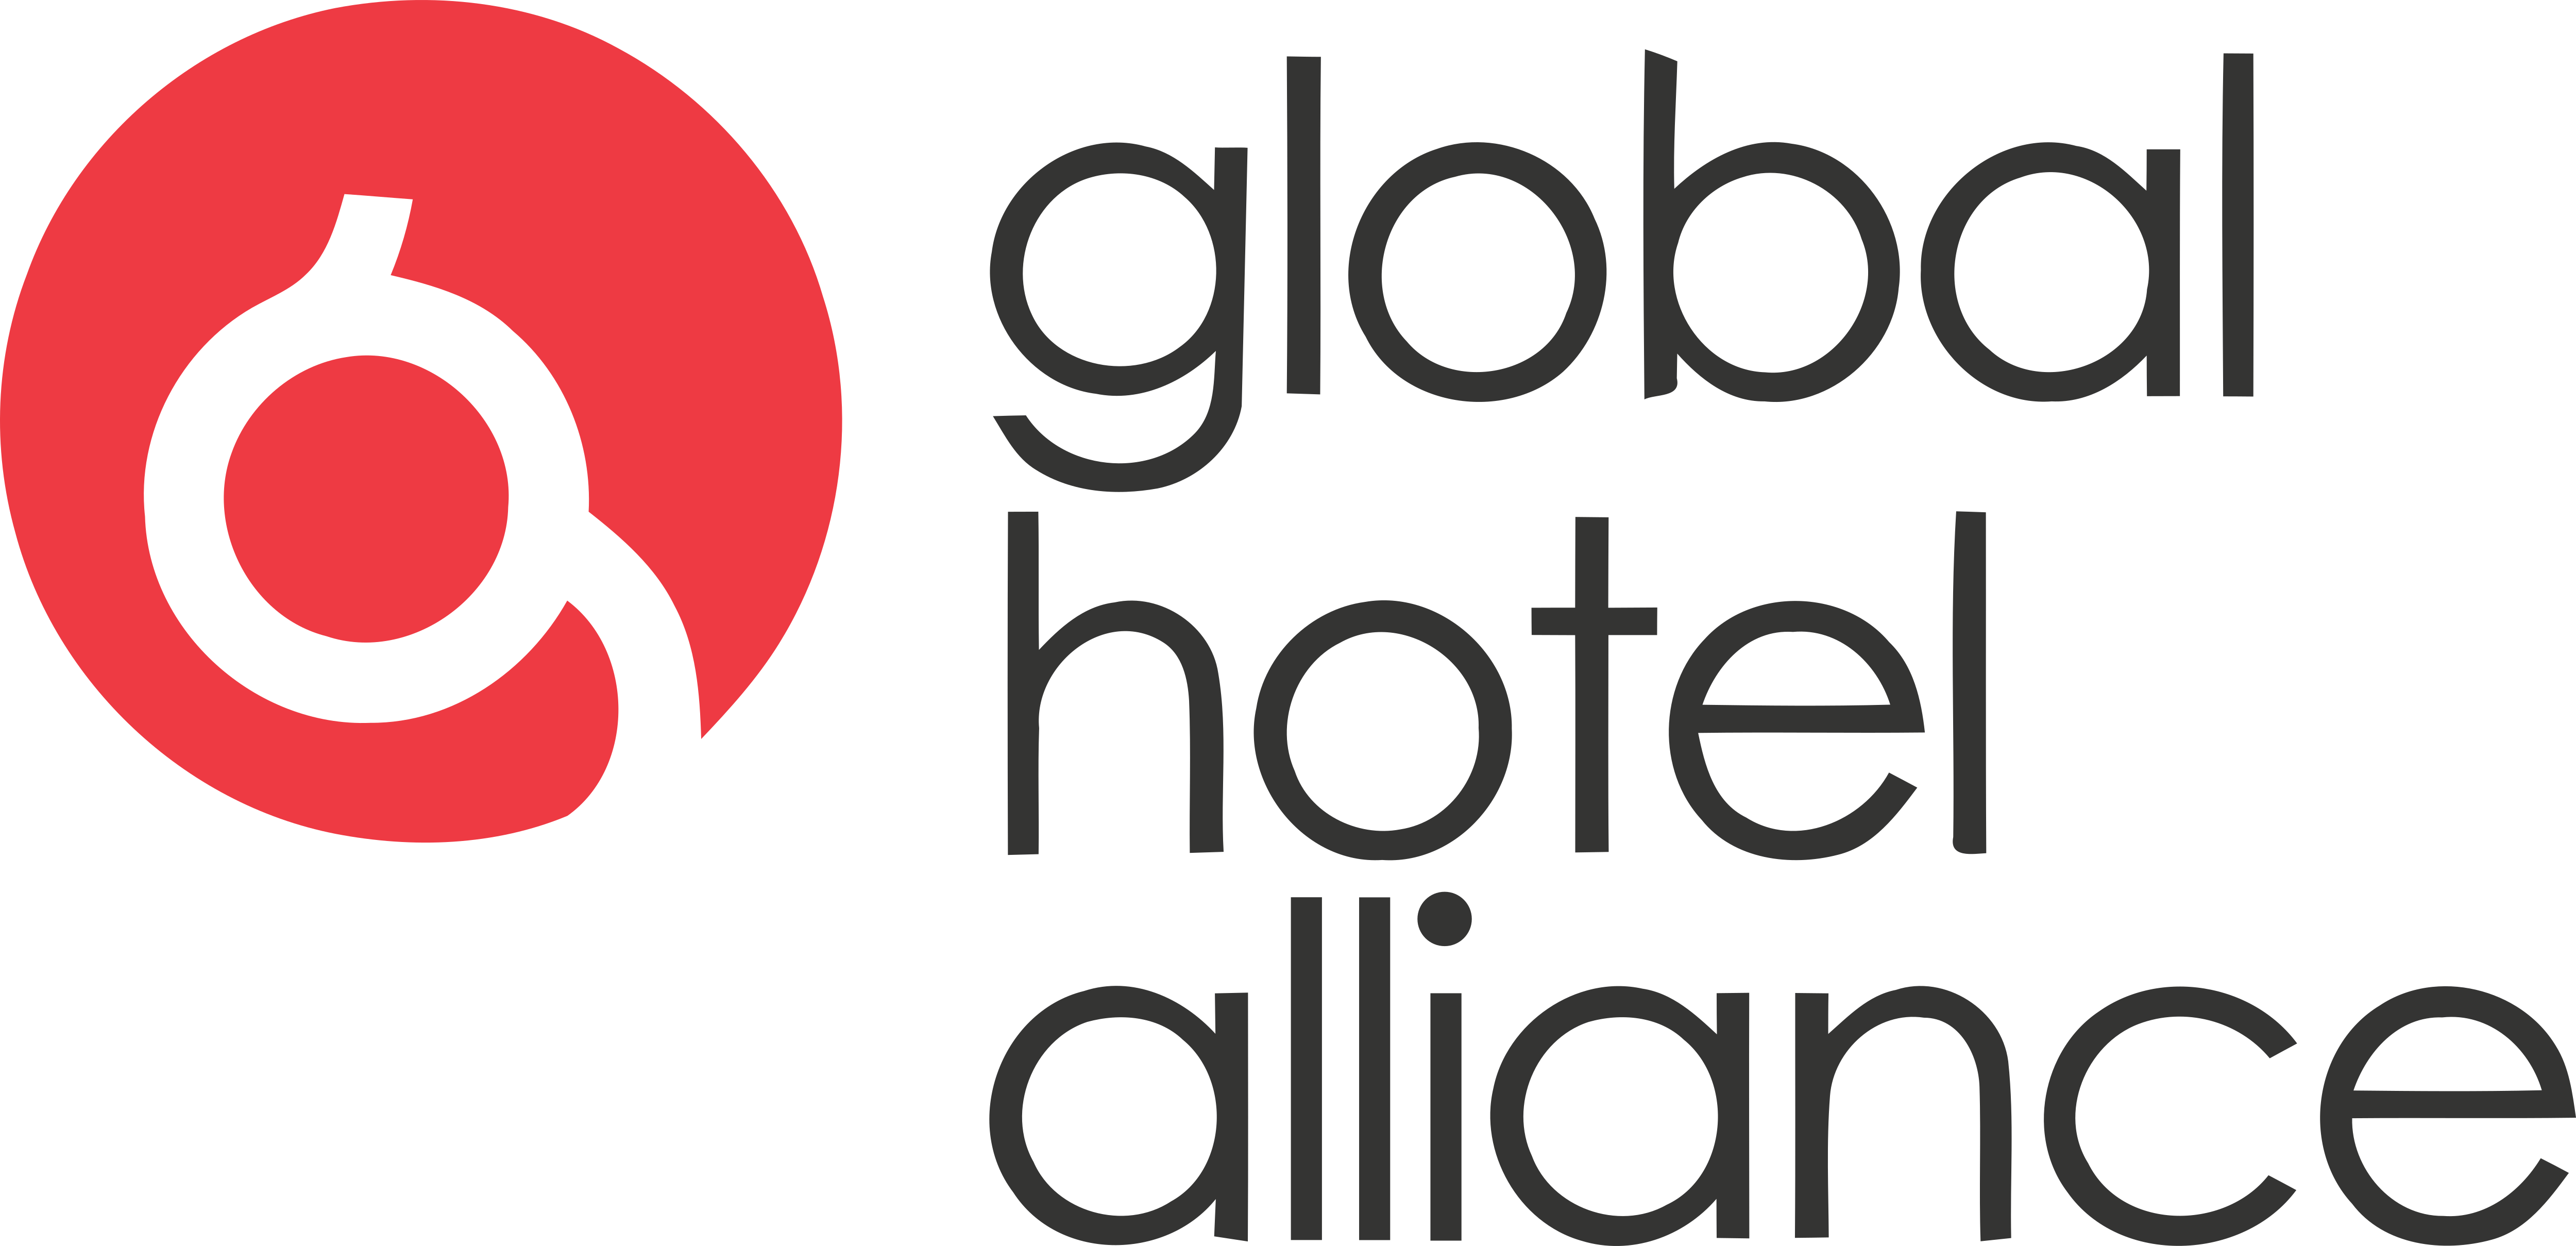 Global hotels. Глобальный гостиничный Альянс. Global Hotel. Отель Global Hotels. Хочу Глобал.